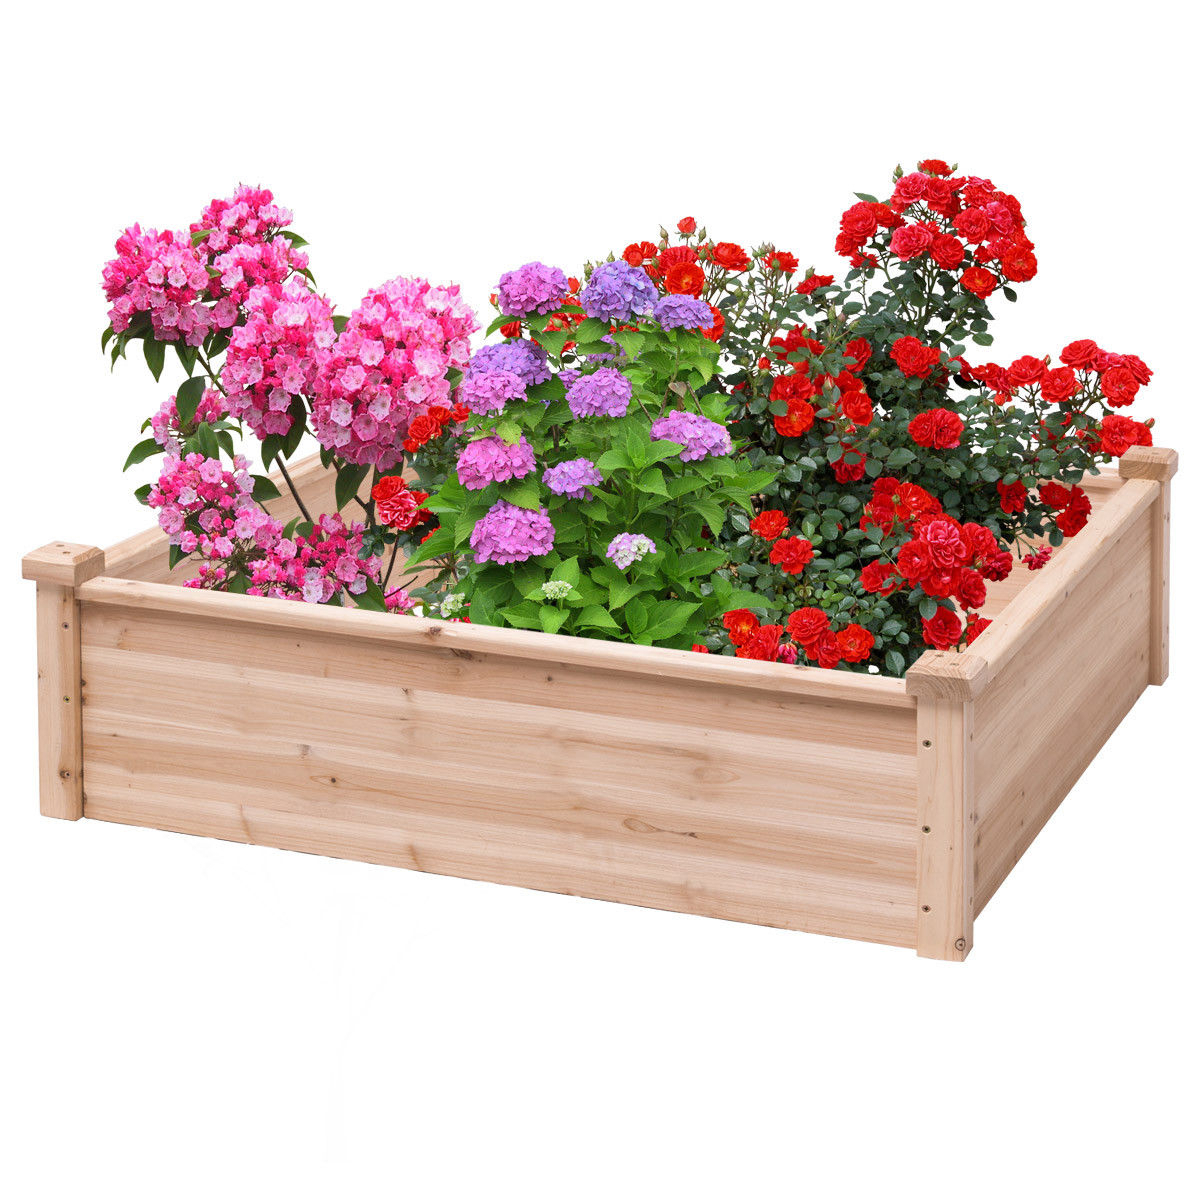 Wooden Garden Bed Vegetable Flower Raised Square Planter Kit Outdoor Garden